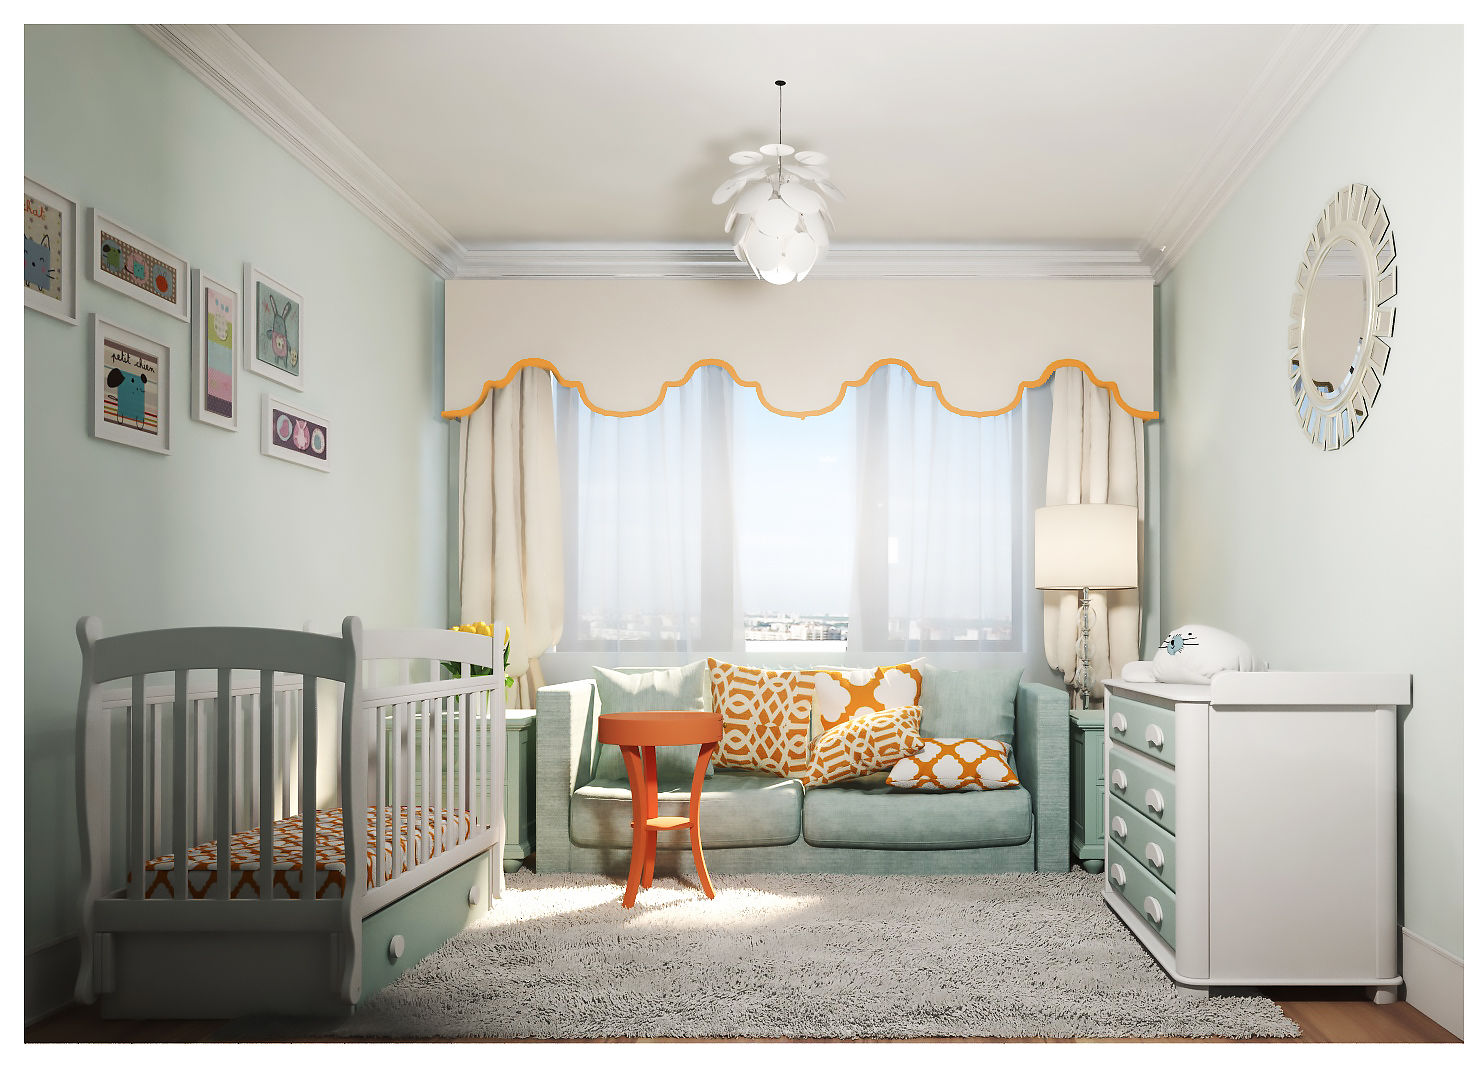 3-bedroom Apartment, Moscow , Alexander Krivov Alexander Krivov 嬰兒房/兒童房